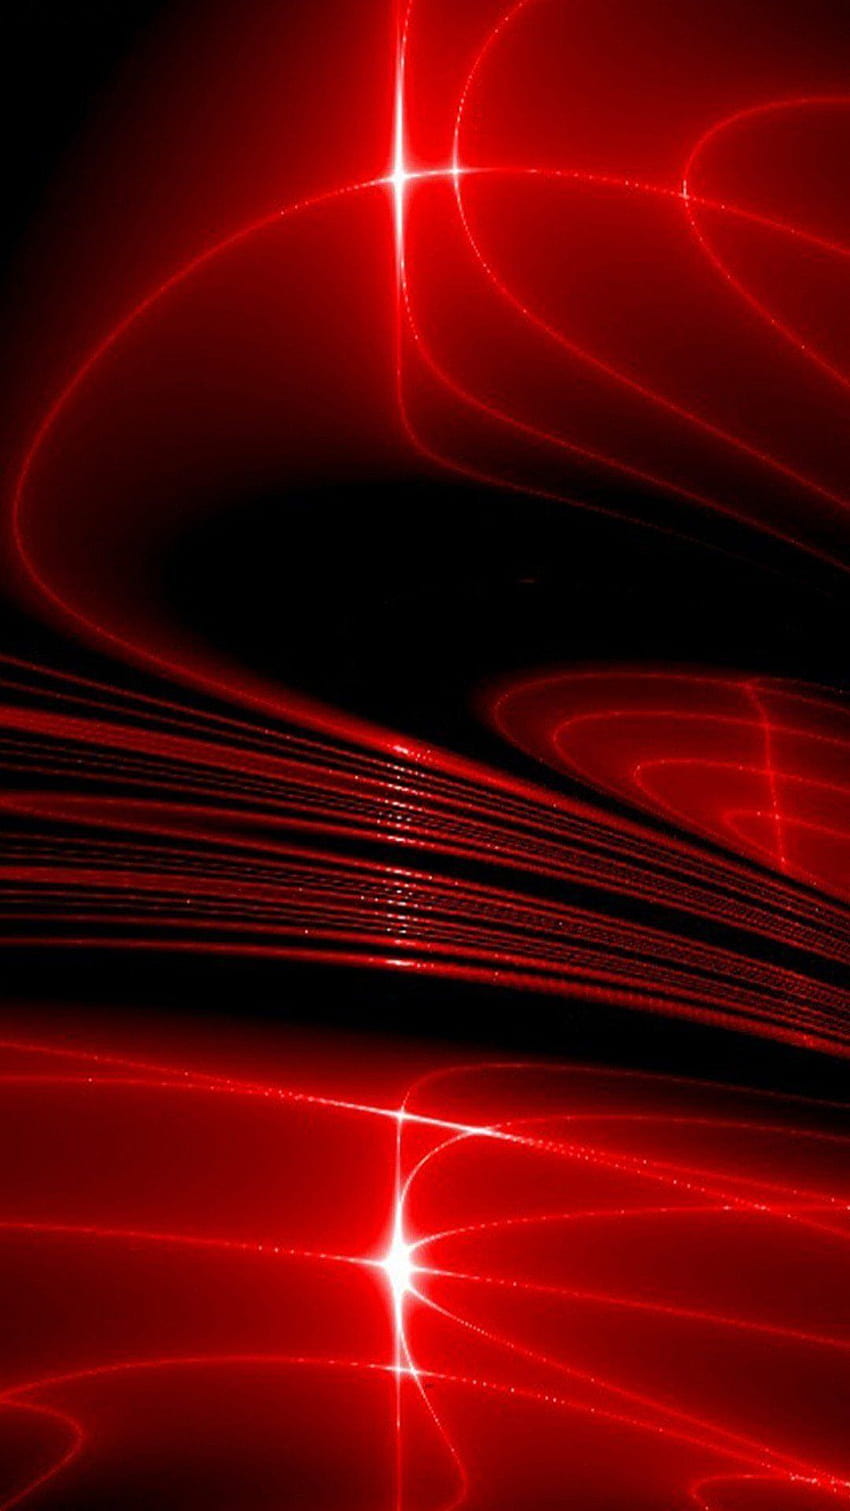 Dành cho những ai thích sự khác biệt, Cool red dark mobile là bức hình nền hoàn hảo cho điện thoại của bạn. Sự kết hợp táo bạo giữa màu đen và đỏ thể hiện phong cách thời trang nổi bật, đầy cá tính của bạn.